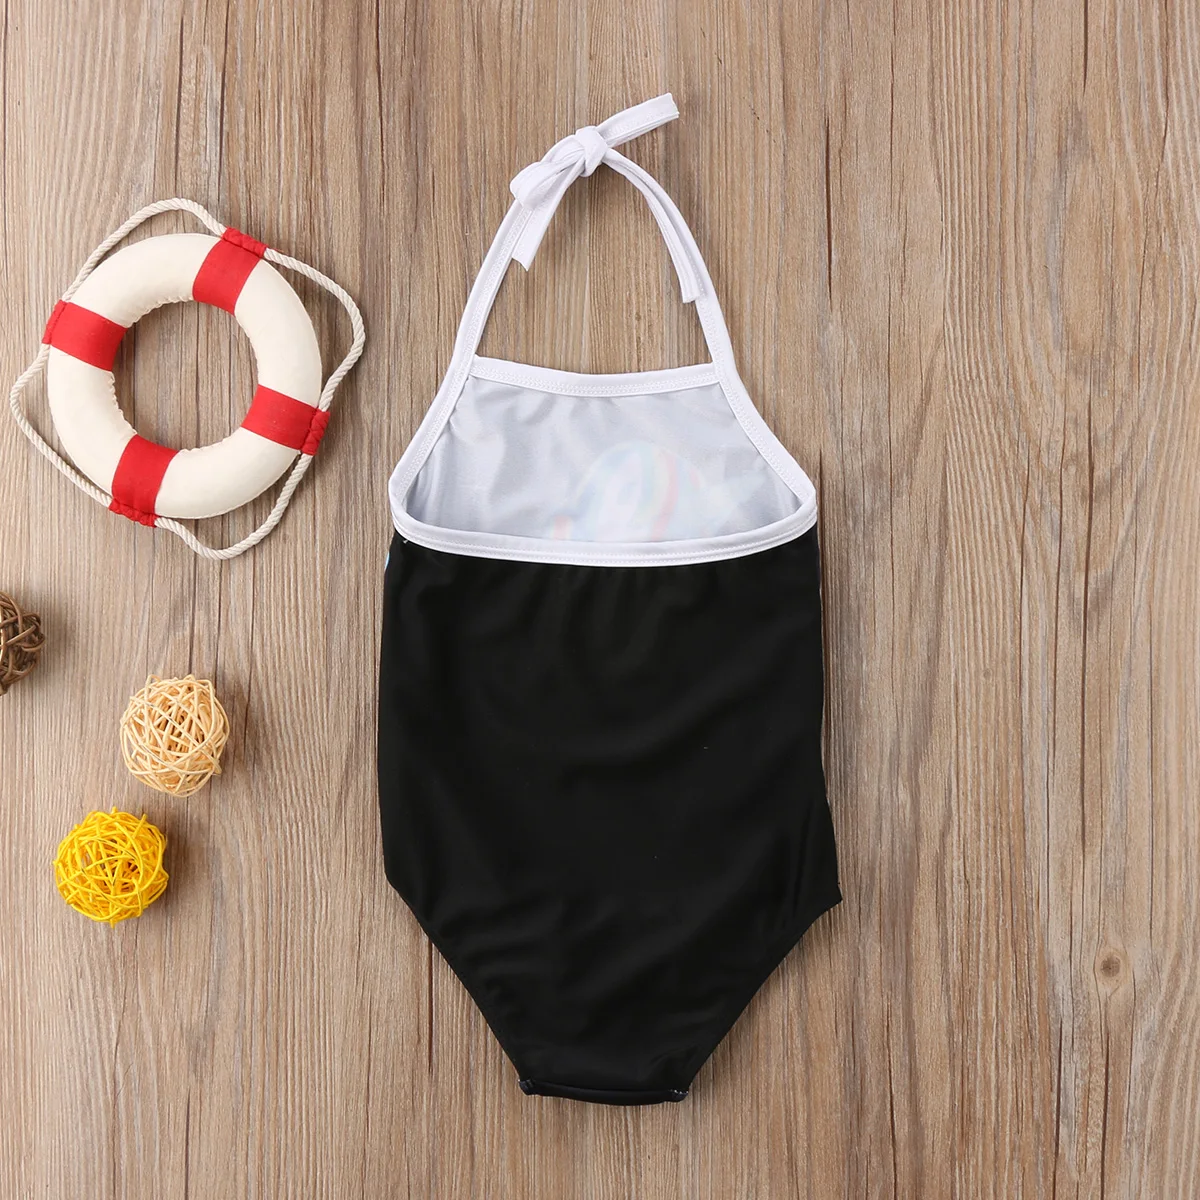 Бандажный цельный купальник-бикини с единорогом для маленьких девочек, купальный костюм, монокини, купальный костюм, пляжная одежда